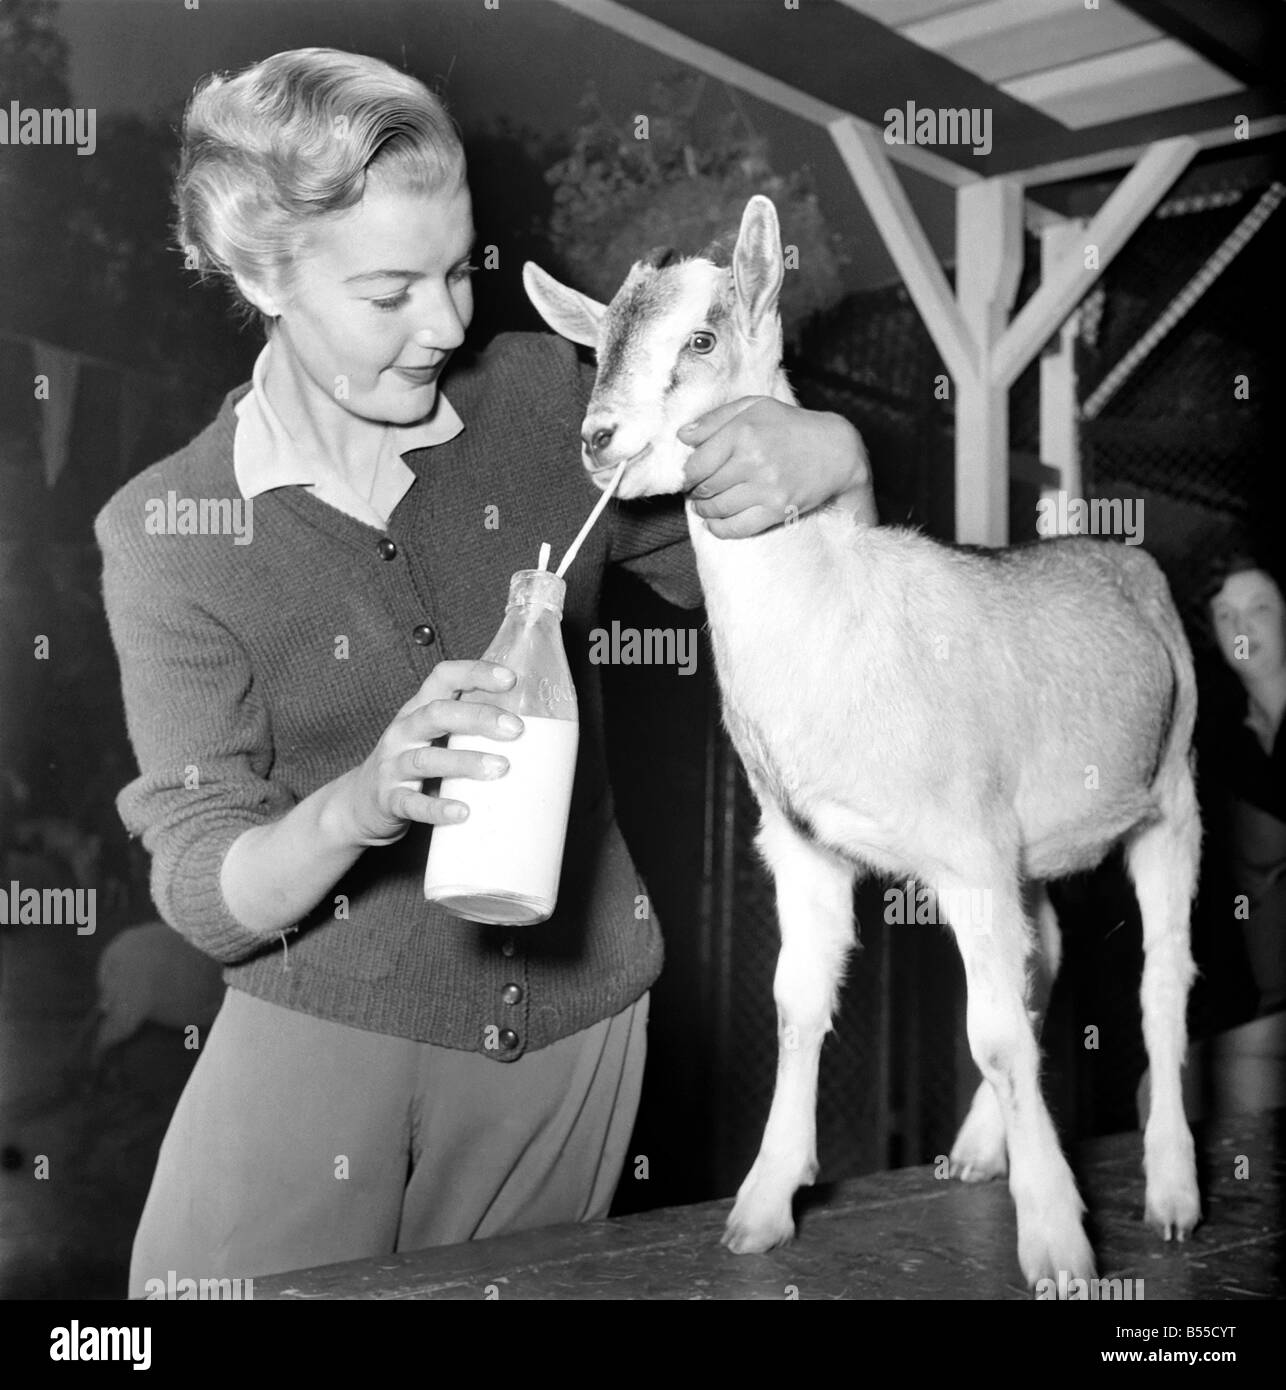 Animaux : chèvres. Femme nourrit le lait de chèvre. Novembre 1953 D6103-001 Banque D'Images